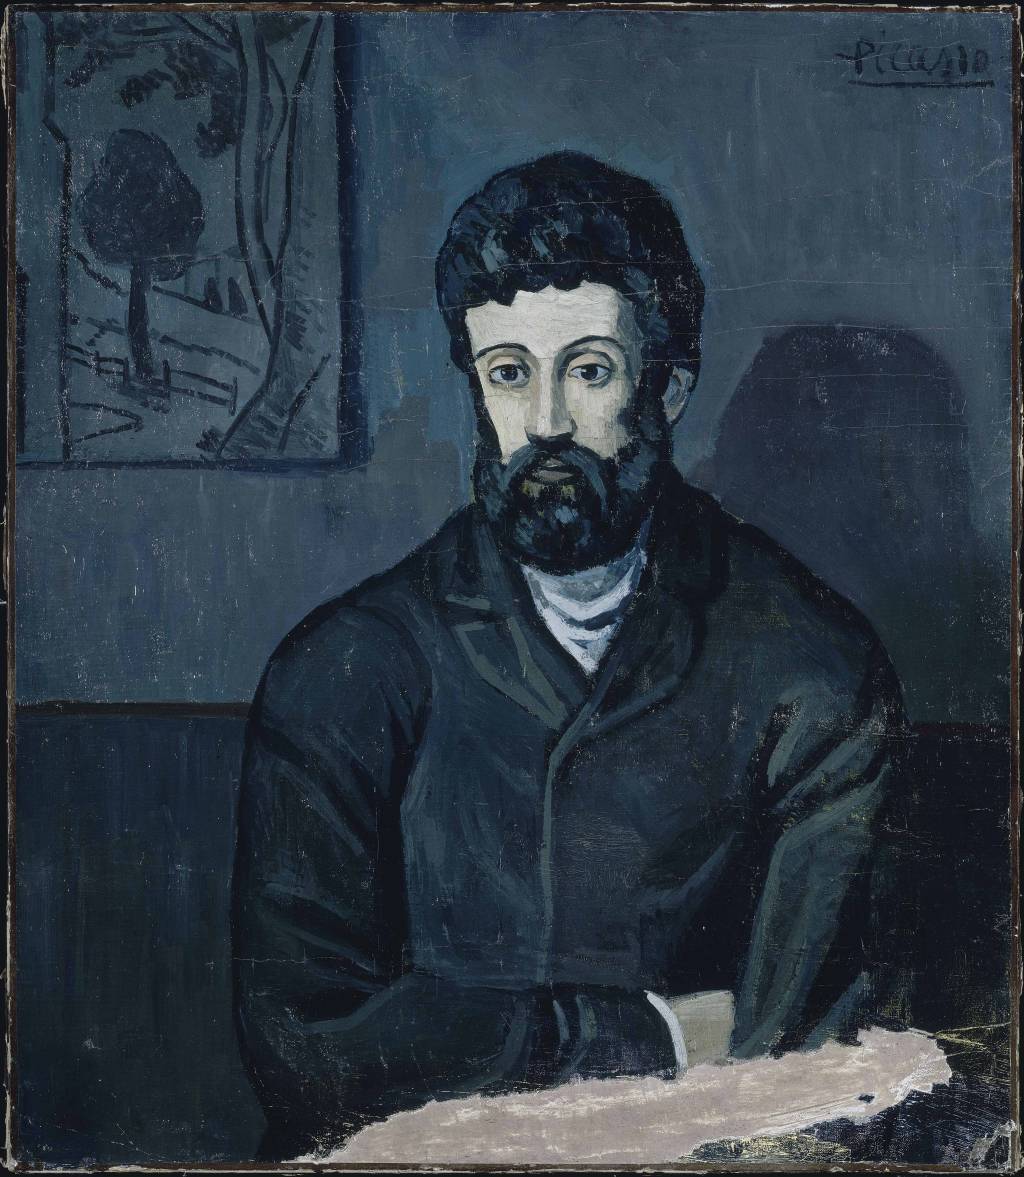 picasso-portrait-d-homme-1903-rmn-grand-palais-musee-national-picasso-paris-succession-picasso-2015.jpeg